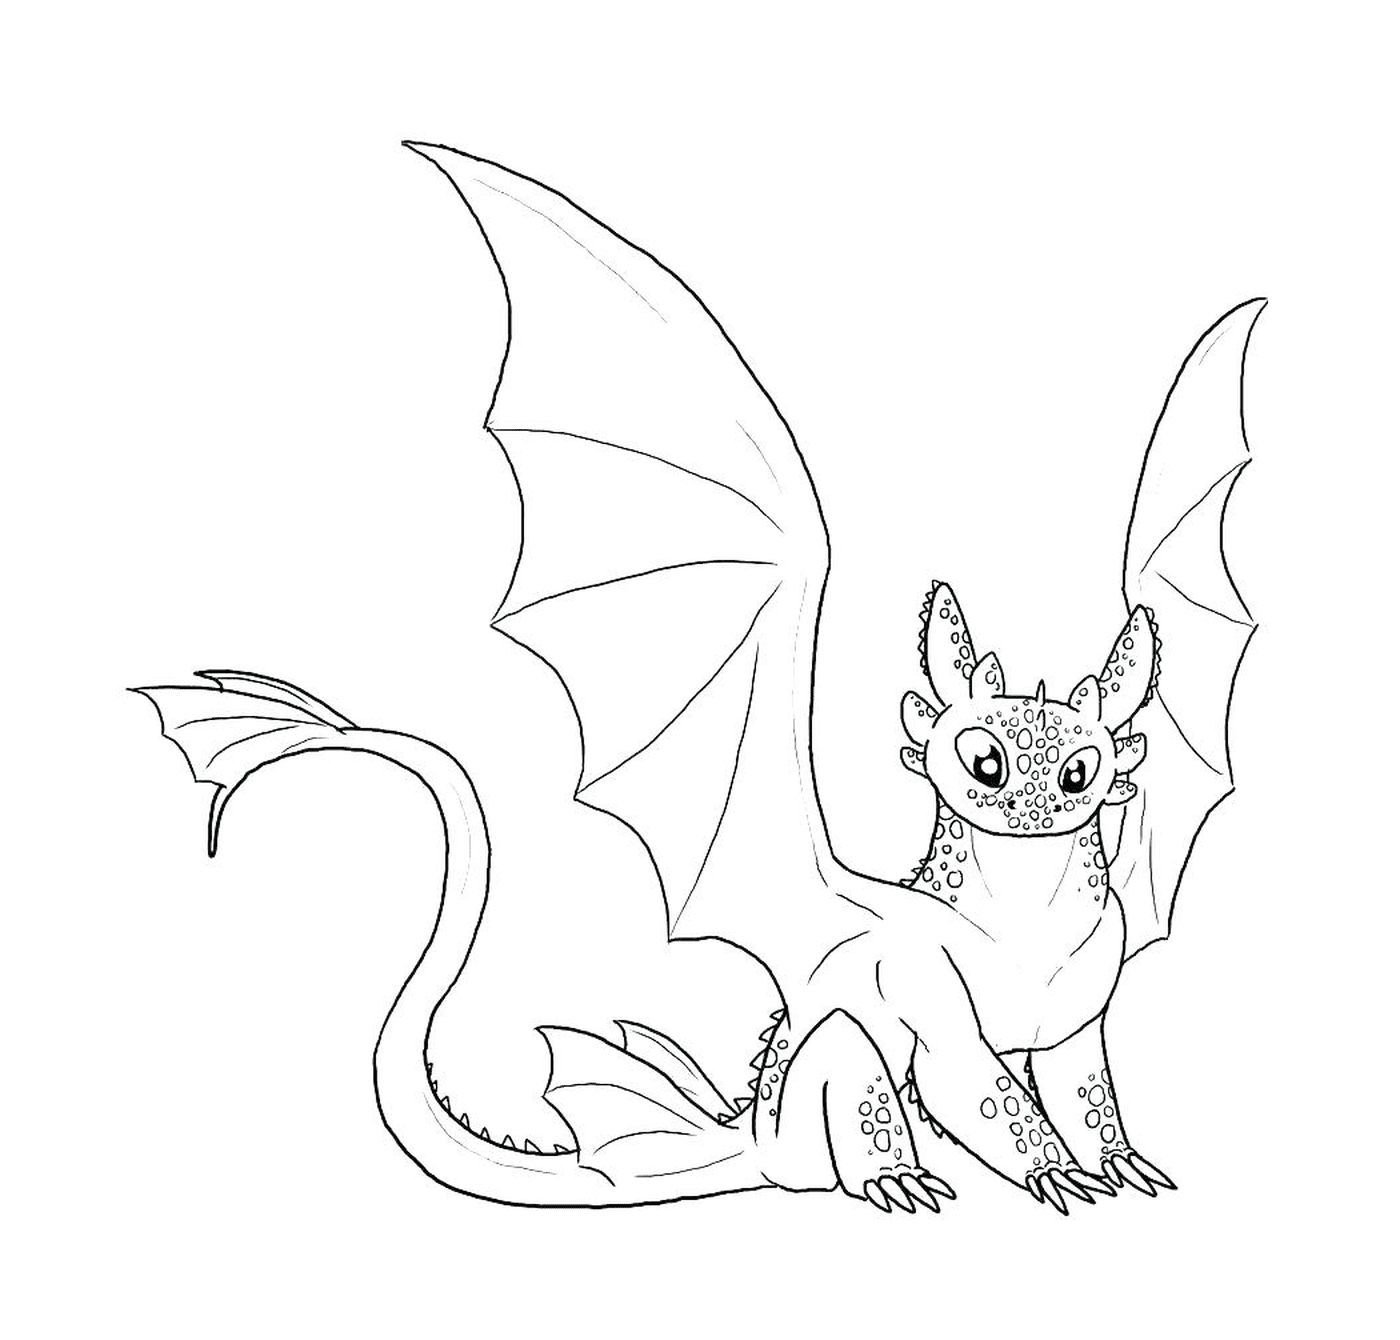  Toothless, um dragão bonito 